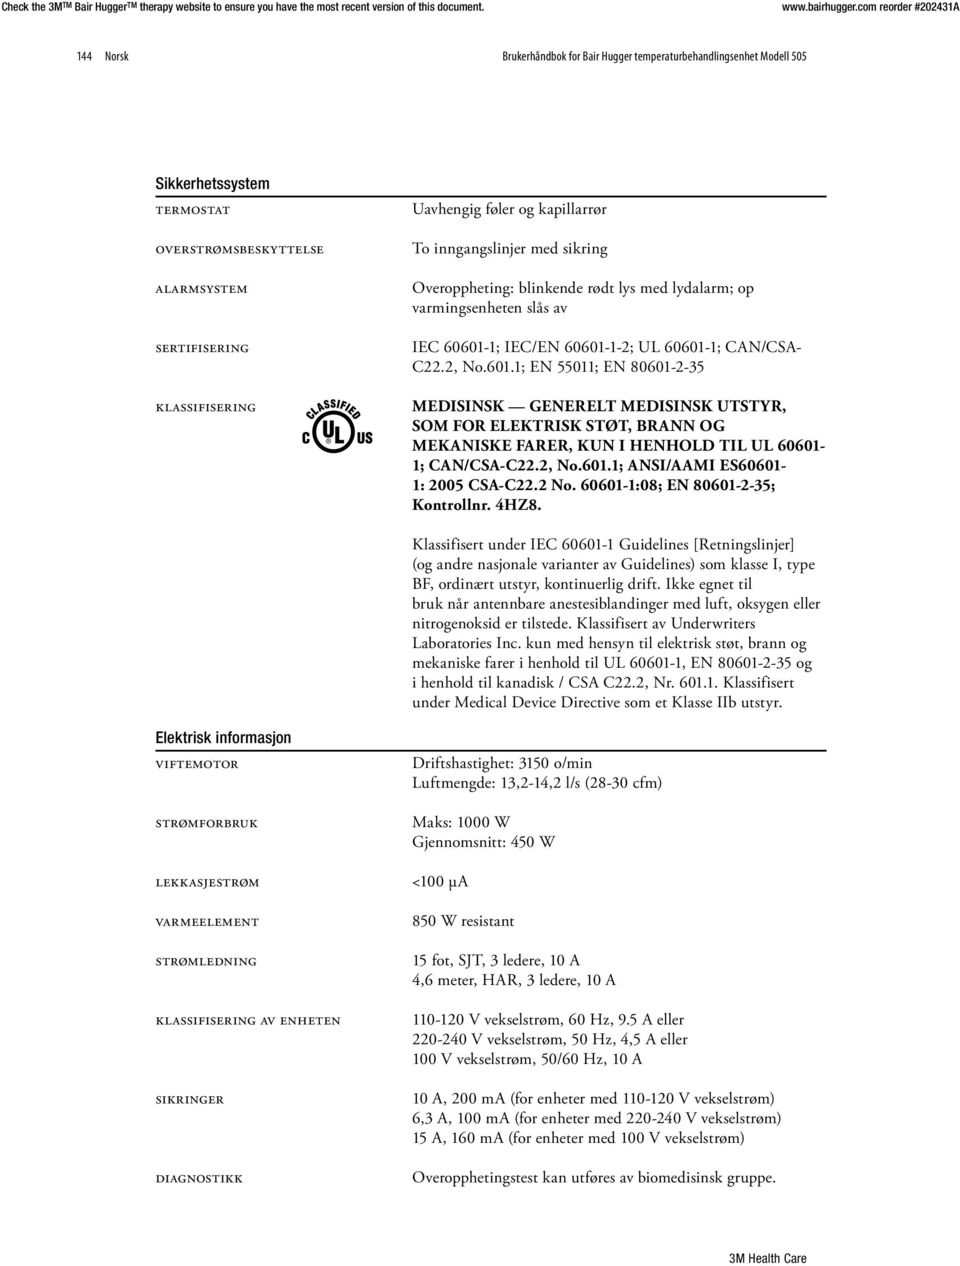 1; IEC/EN 60601-1-2; UL 60601-1; CAN/CSA- C22.2, No.601.1; EN 55011; EN 80601-2-35 klassifisering MEDISINSK GENERELT MEDISINSK UTSTYR, SOM FOR ELEKTRISK STØT, BRANN OG MEKANISKE FARER, KUN I HENHOLD TIL UL 60601-1; CAN/CSA-C22.